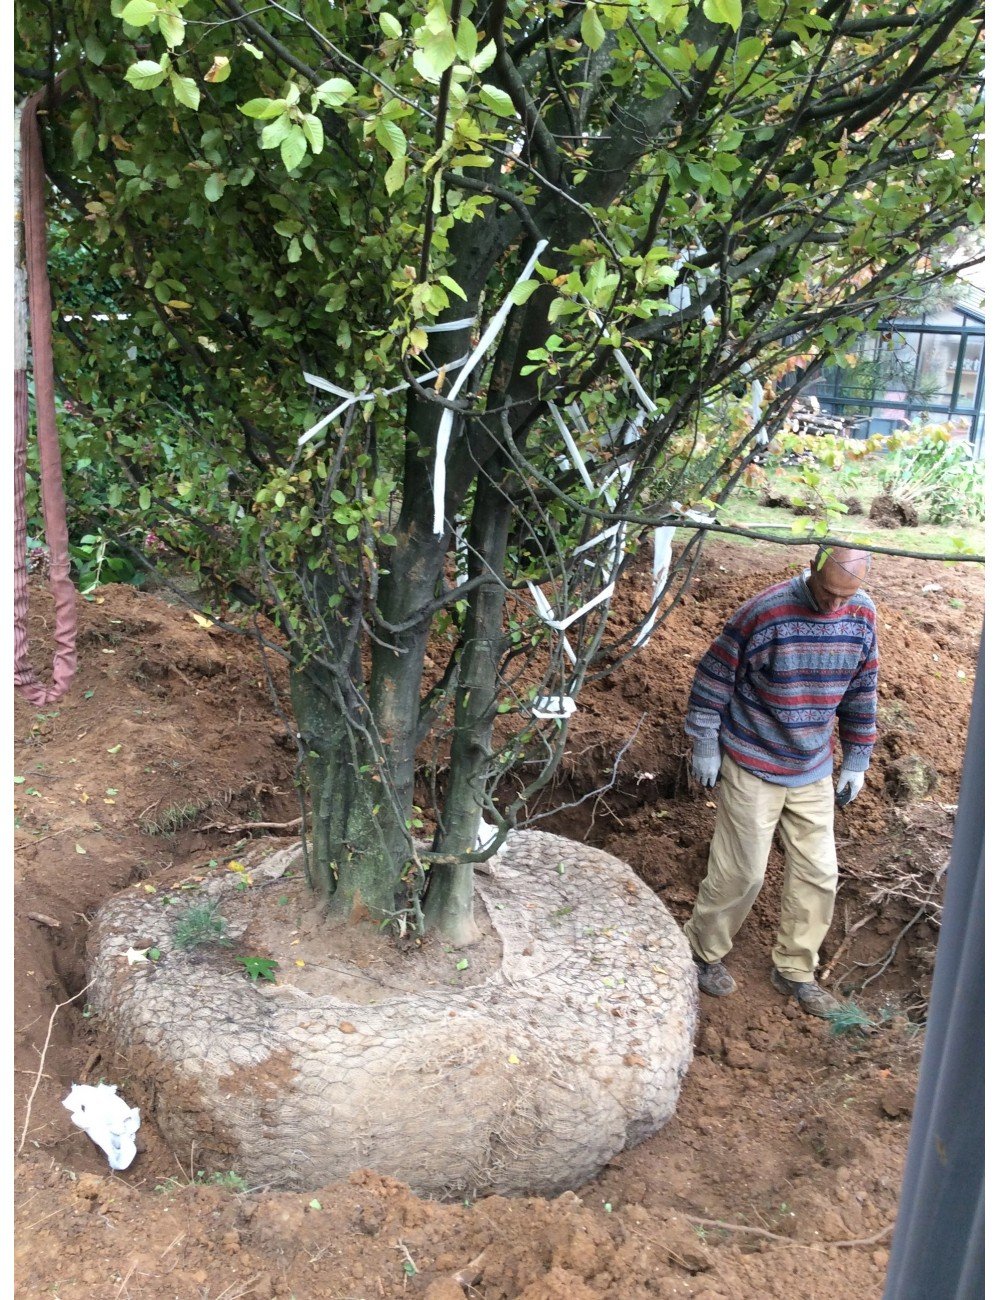 Carpino Betularis ceppaia altezza 10 metri circa quintali 35 circa